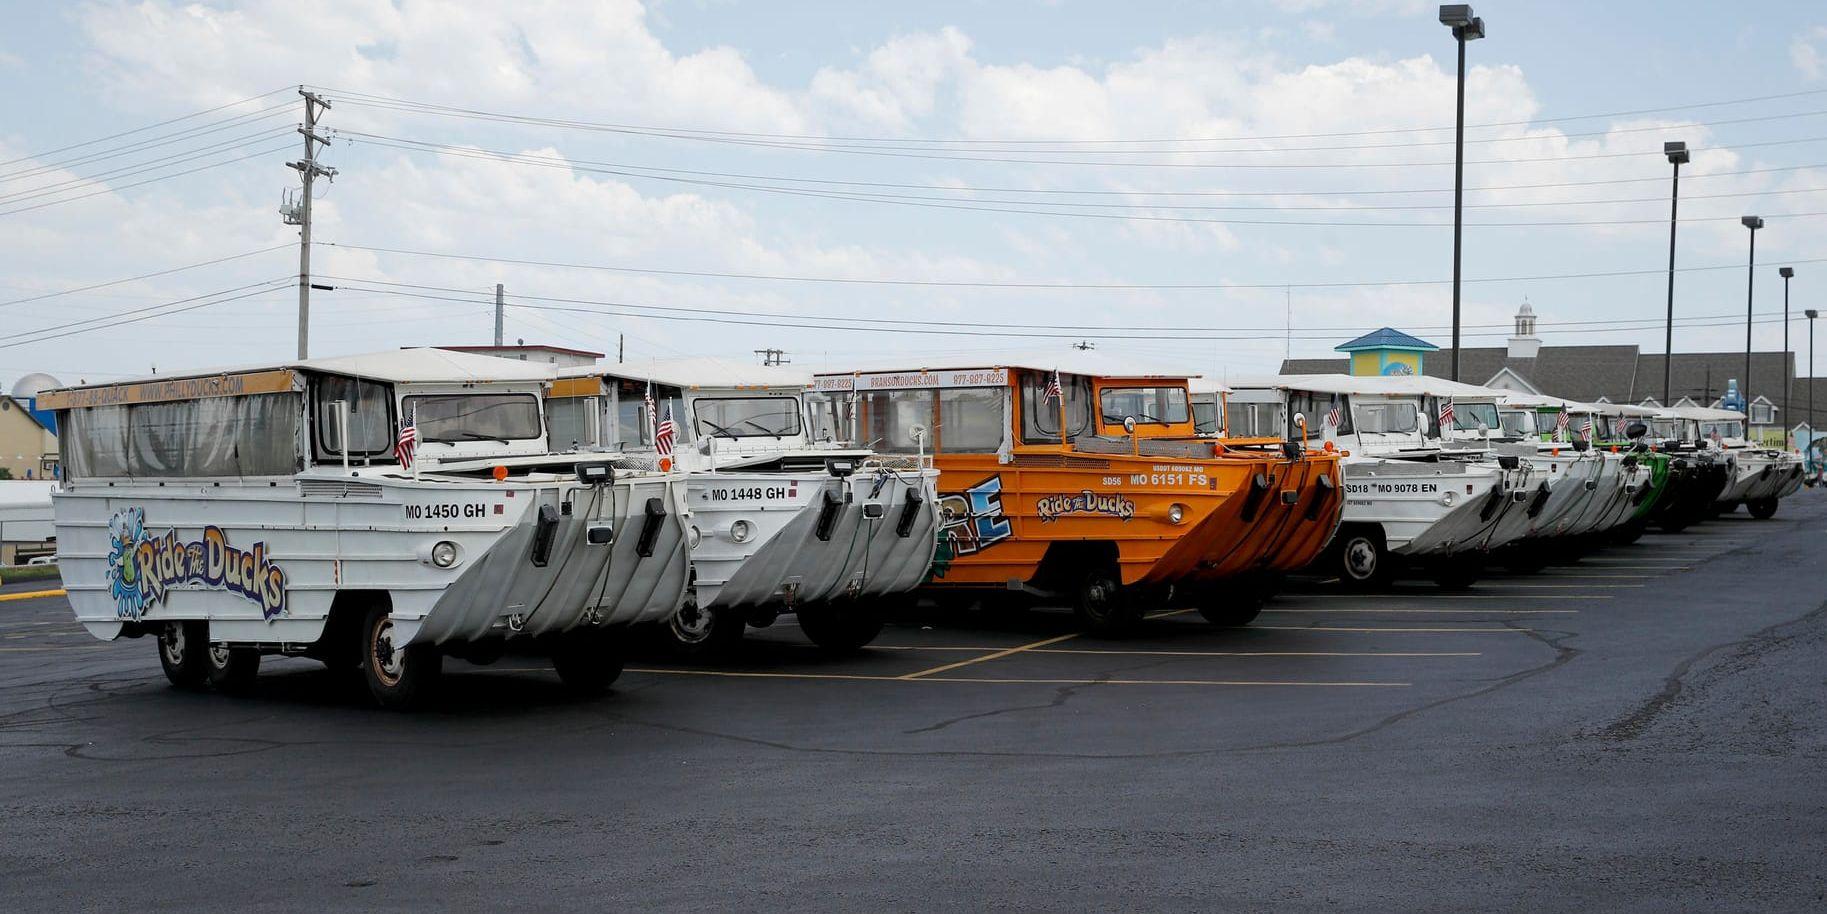 Andra fordon av samma typ som det förolyckade, hos företaget Ride the Ducks i Branson, Missouri.